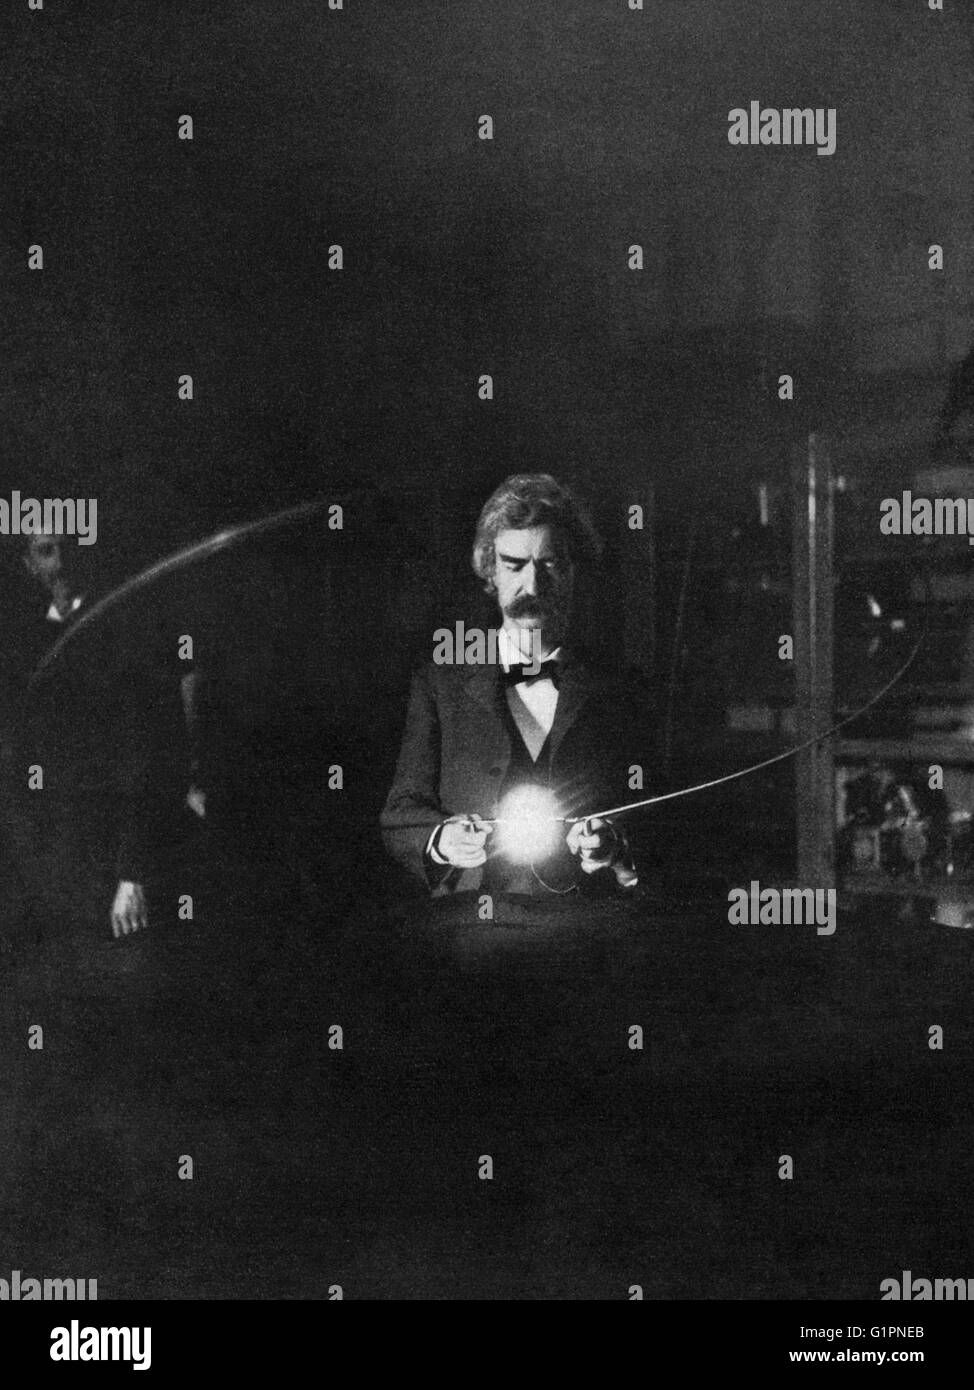 MARK TWAIN (1835-1910). Samuel Clemens. US-amerikanischer Schriftsteller und Humorist. Fotografiert im Nikola Teslas Labor; Experiment zur Veranschaulichung der Beleuchtung der Glühlampe durch die Übergabe des Stroms durch den Körper. Fotografie, Januar 1894. Stockfoto